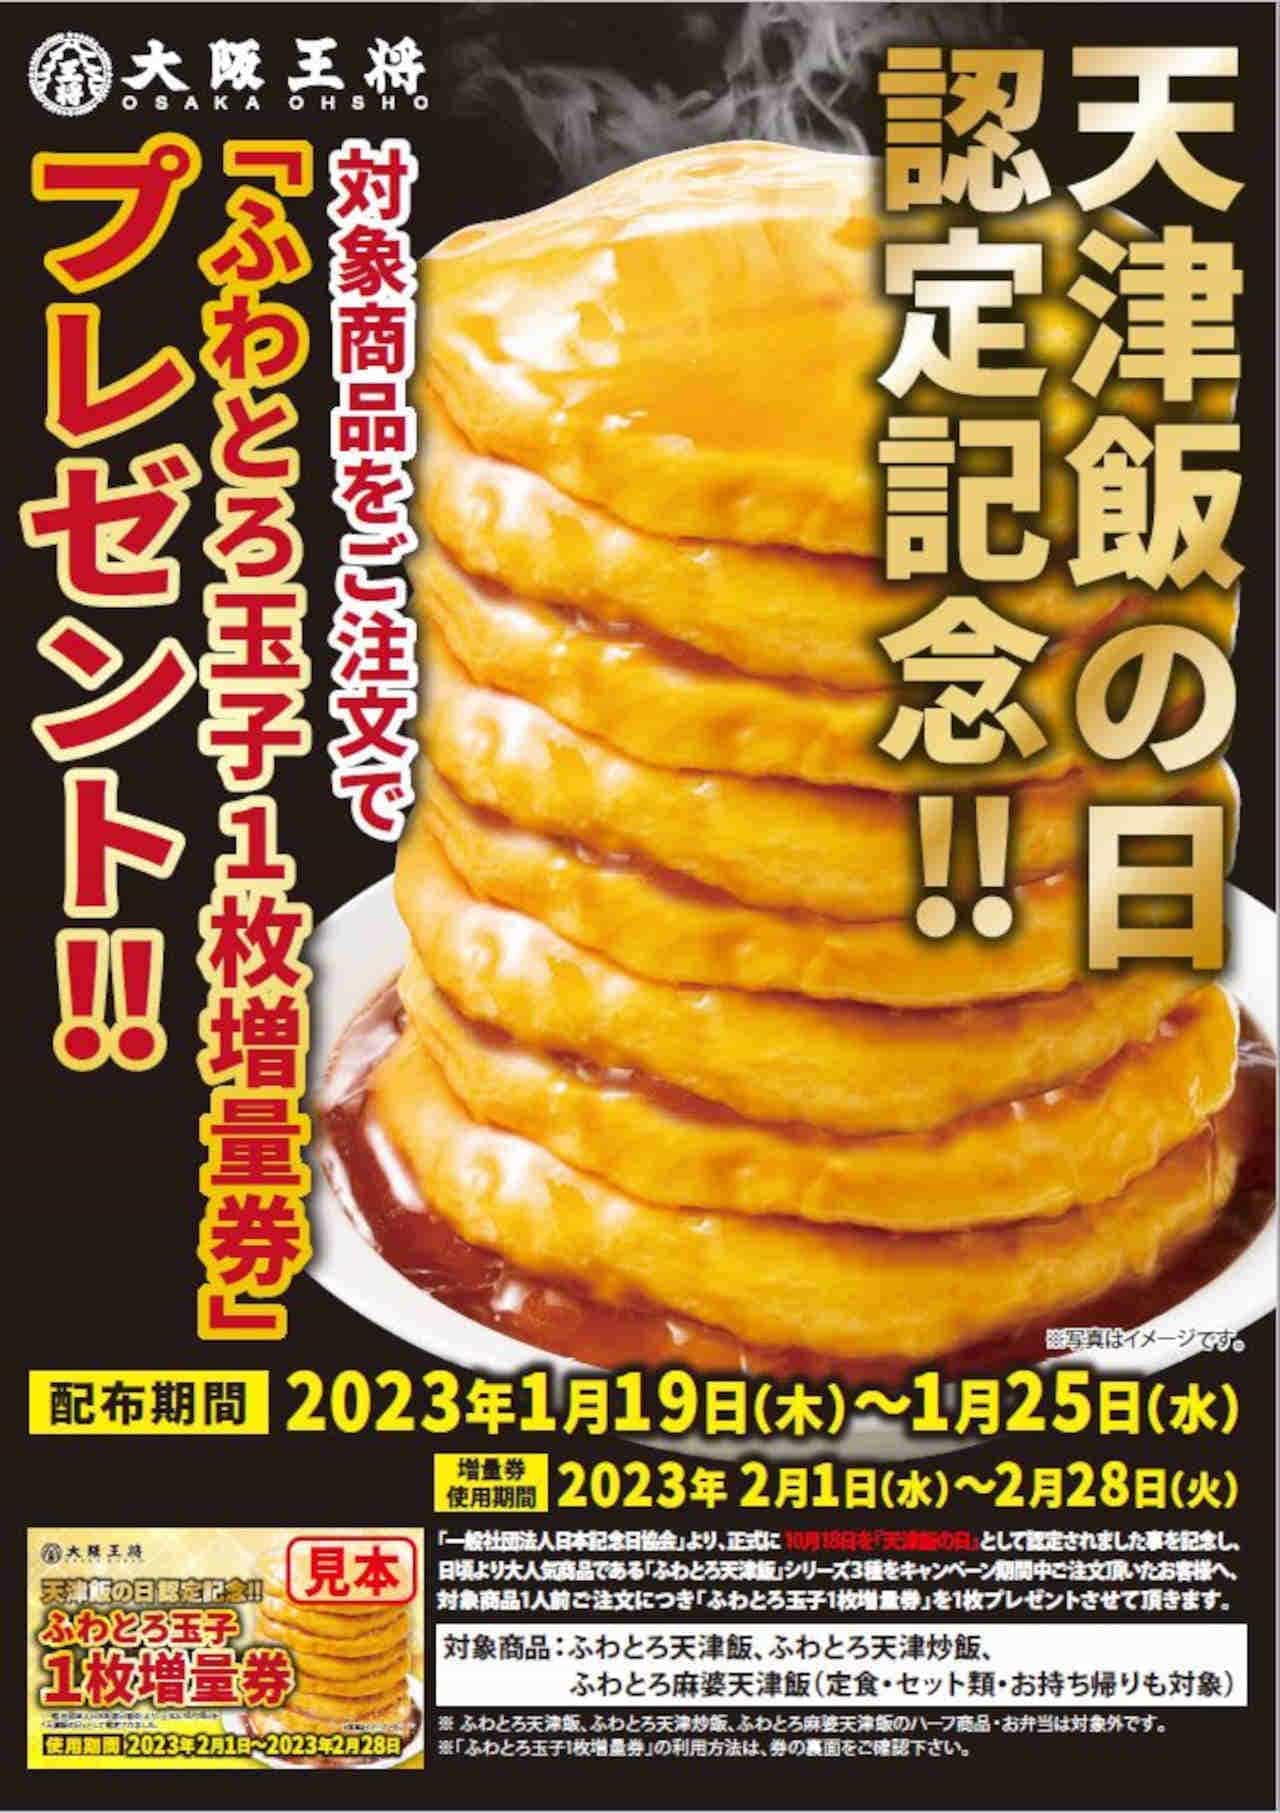 Osaka Ohsho Fuwatoro Tamago (soft-boiled egg) 1 extra coupon Present Campaign